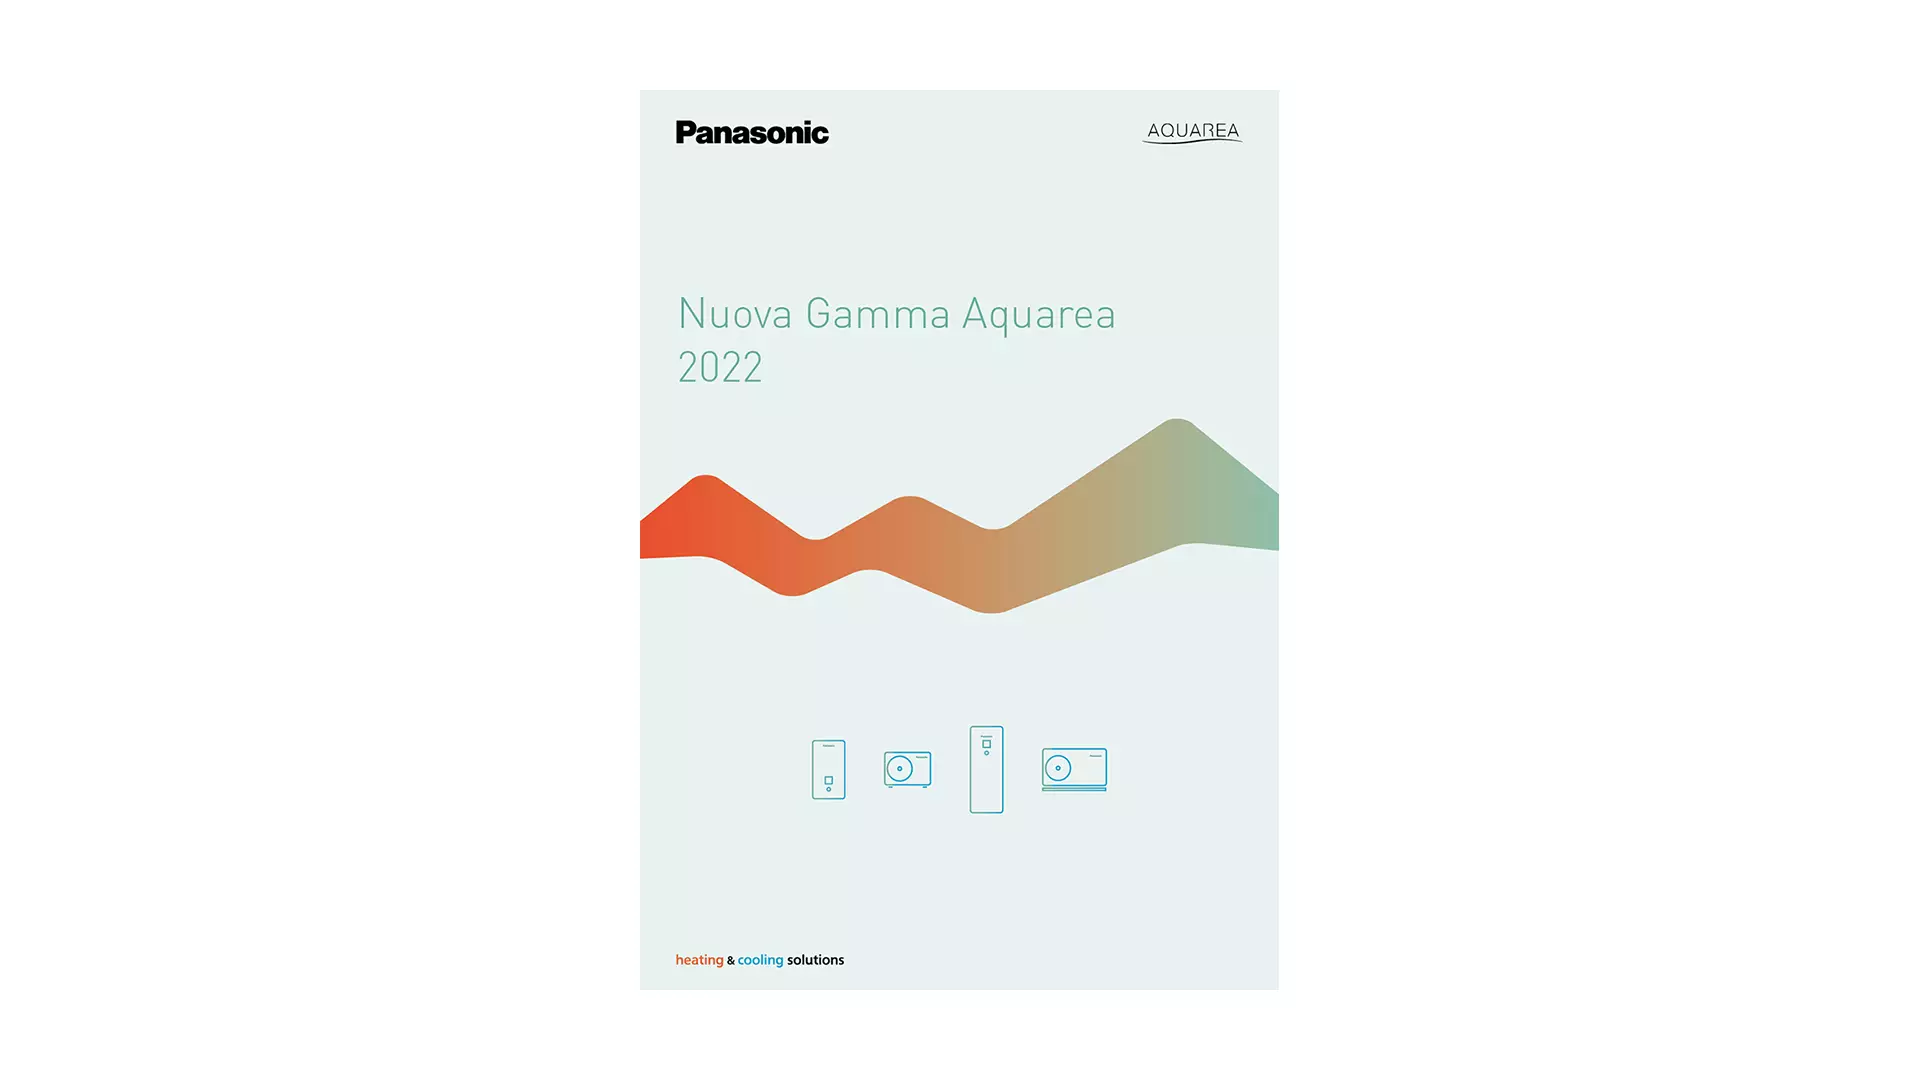 Panasonic - Aquarea